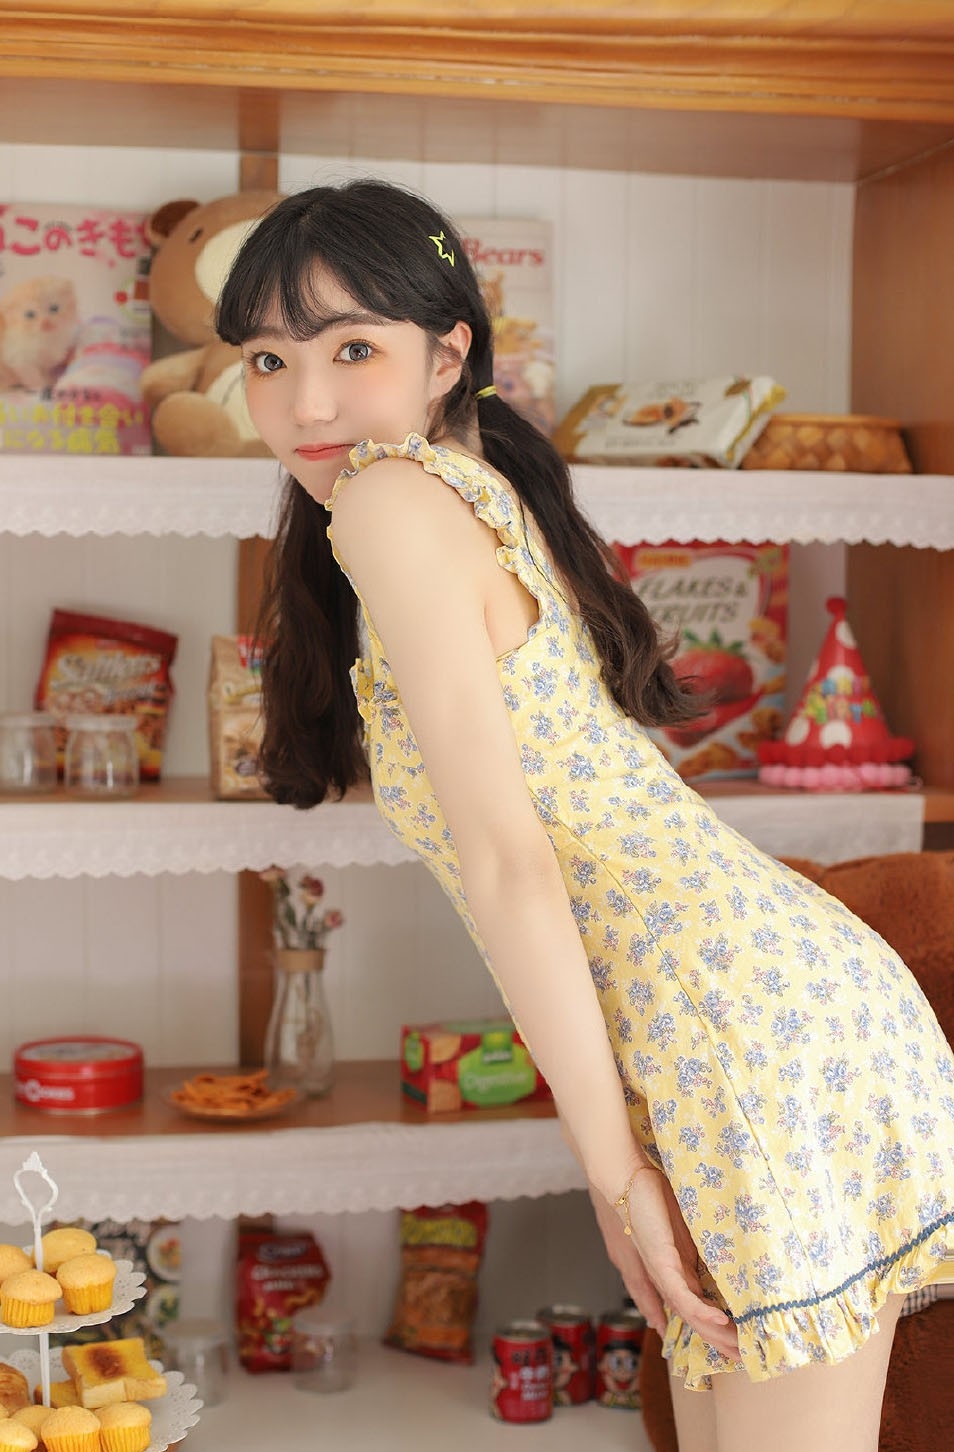 清纯妹妹穿着淡黄的长裙俏皮双马尾顶级艺术照